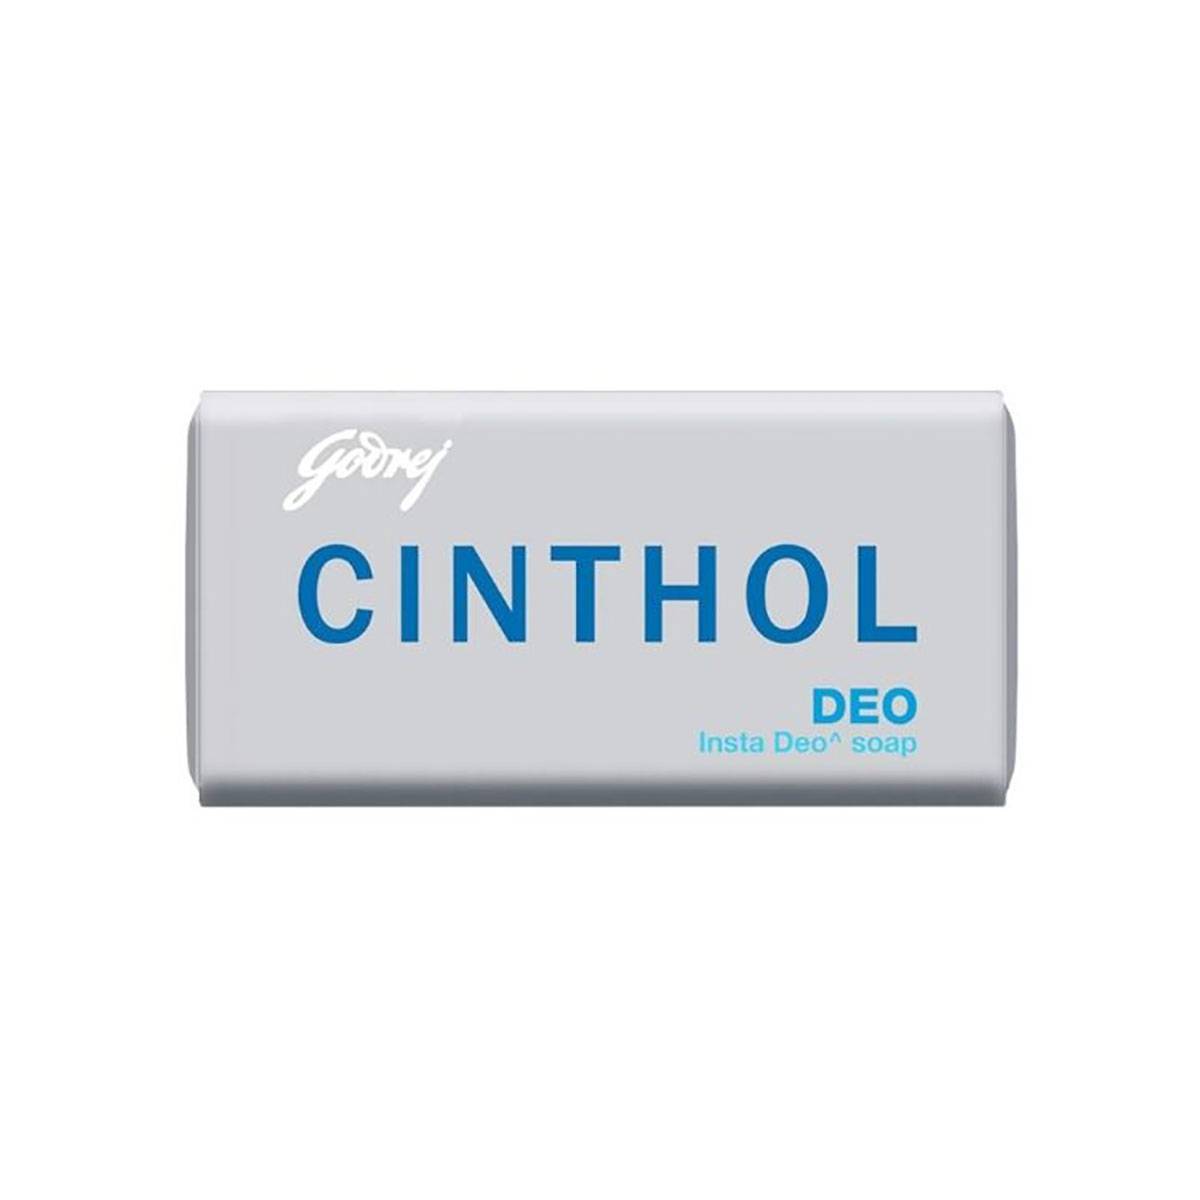 Cinthol Deo Soap 100g